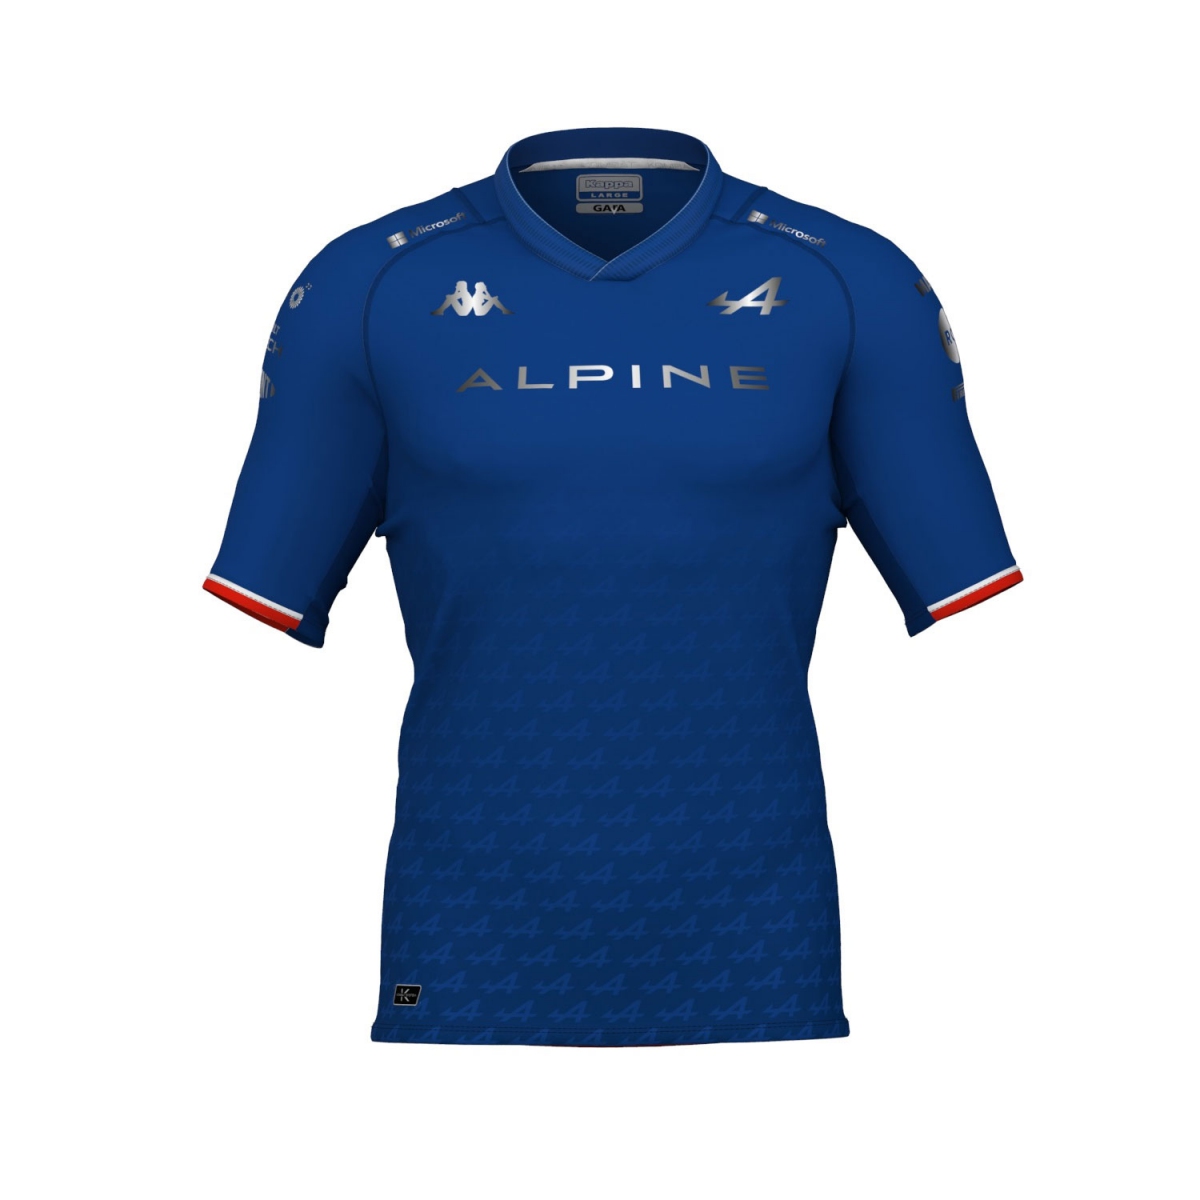 Alpine F1 koszulka męska fernando alonso team